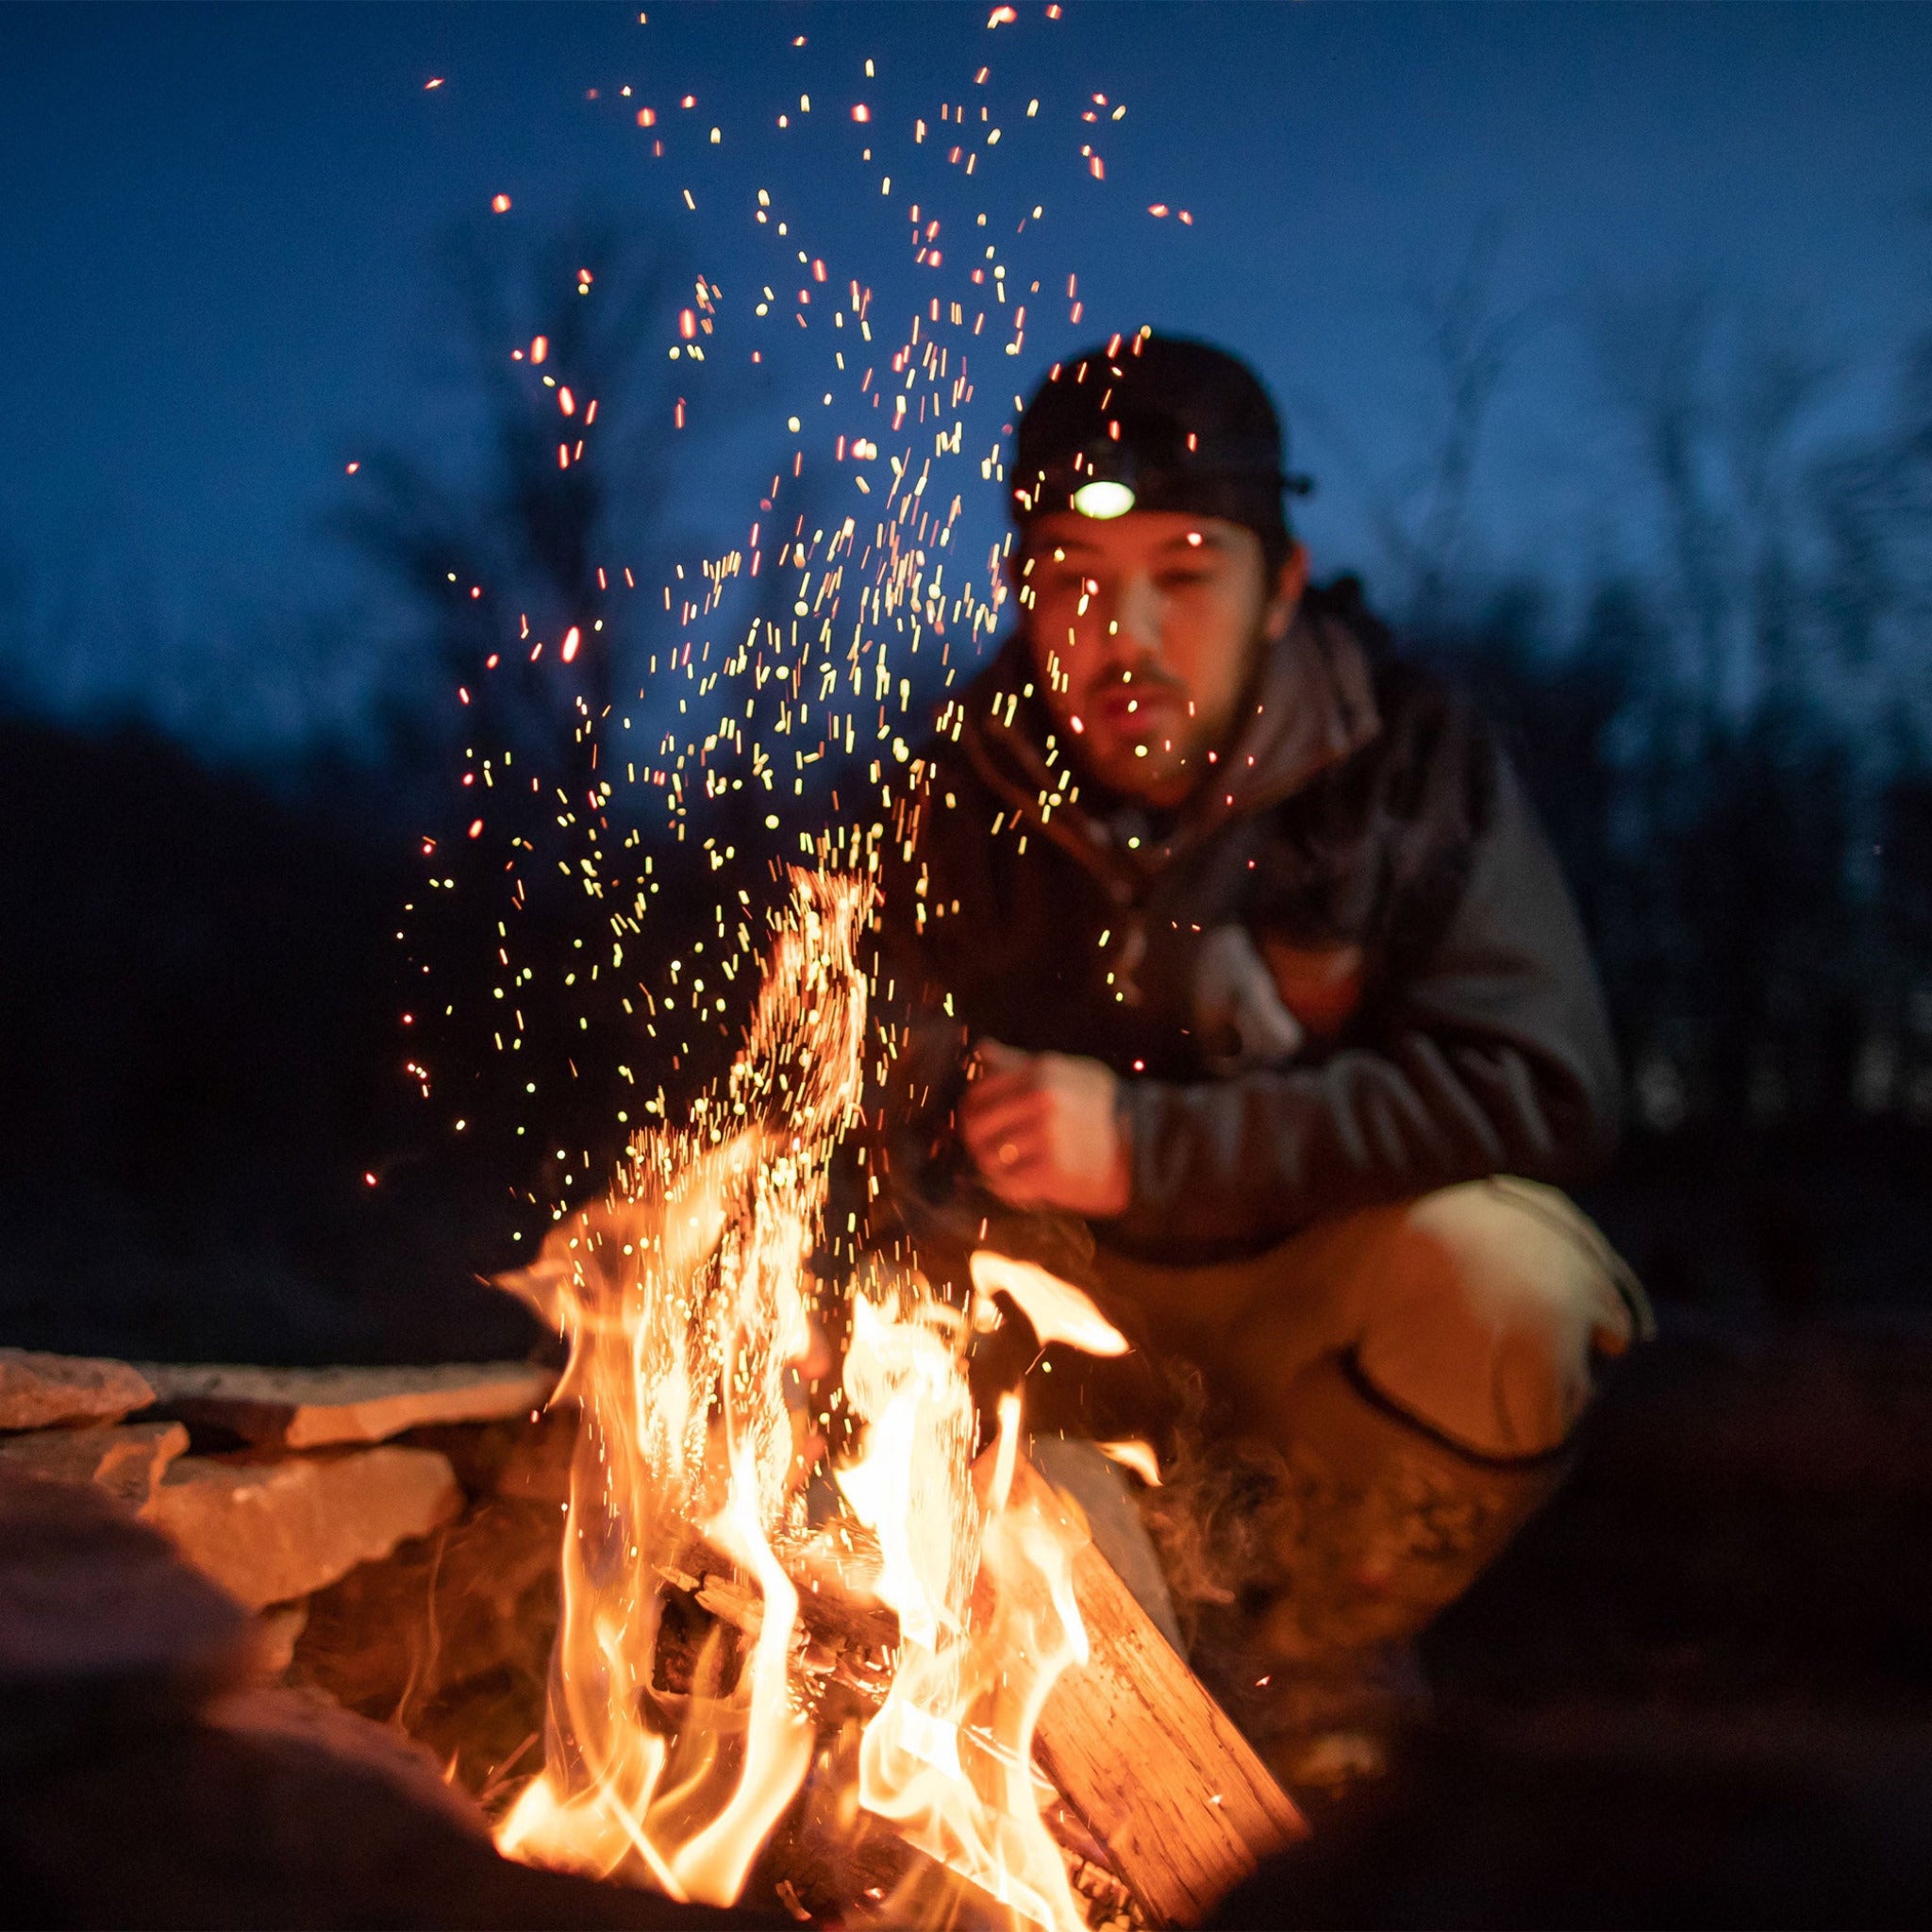 Ledlenser_Fire_Outdoor_Campfire_Rockhouse9.jpg